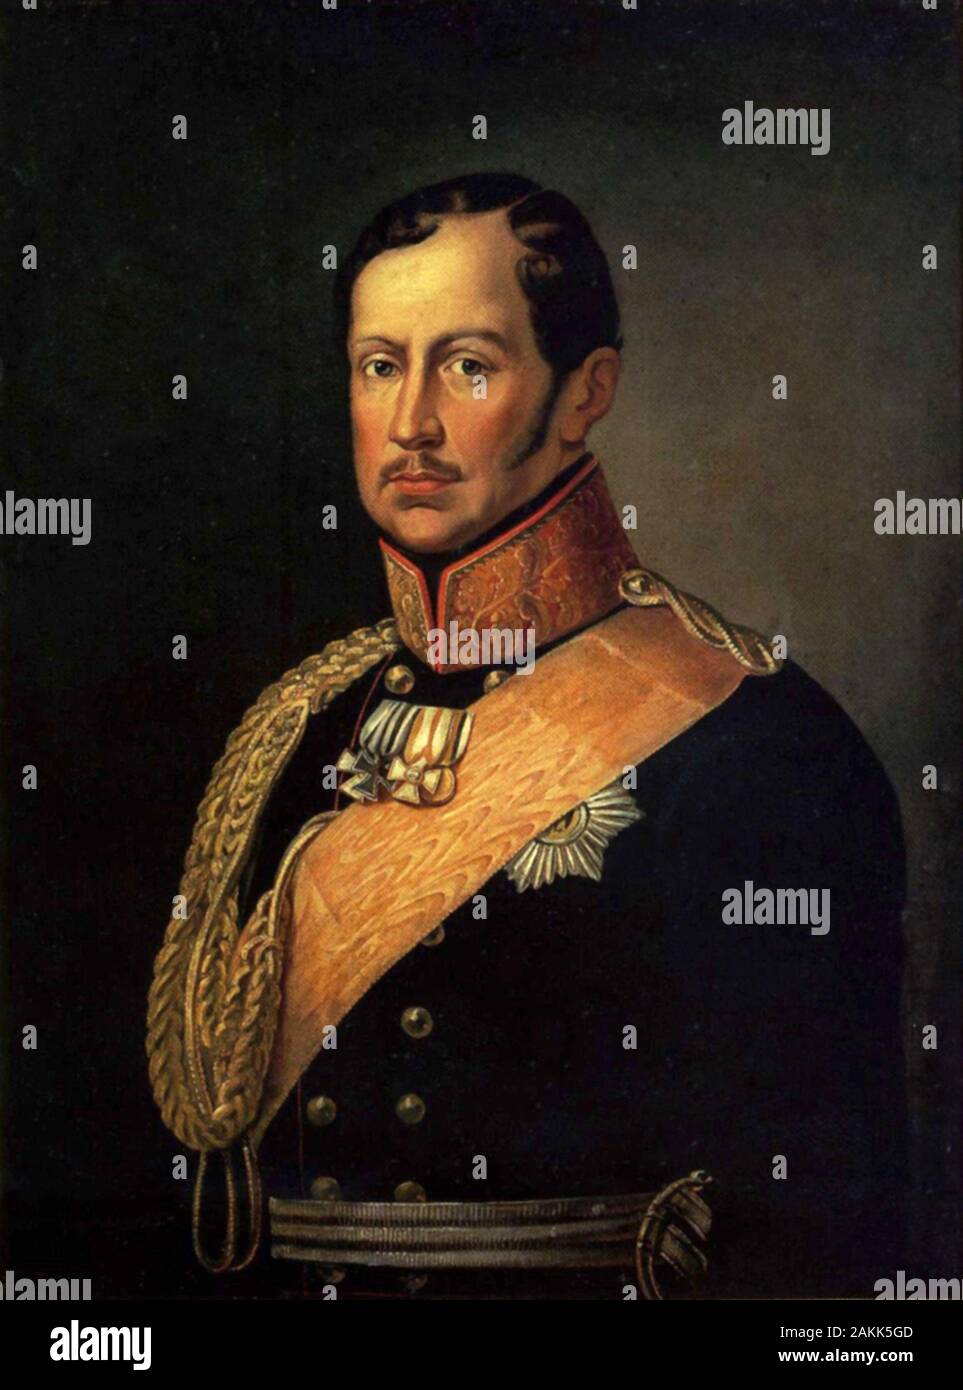 Federico Guglielmo III, Friedrich Wilhelm III (1770 - 1840), re di Prussia dal 1797 al 1840. Governò la Prussia durante i tempi difficili delle guerre napoleoniche e la fine del Sacro Romano Impero. Foto Stock